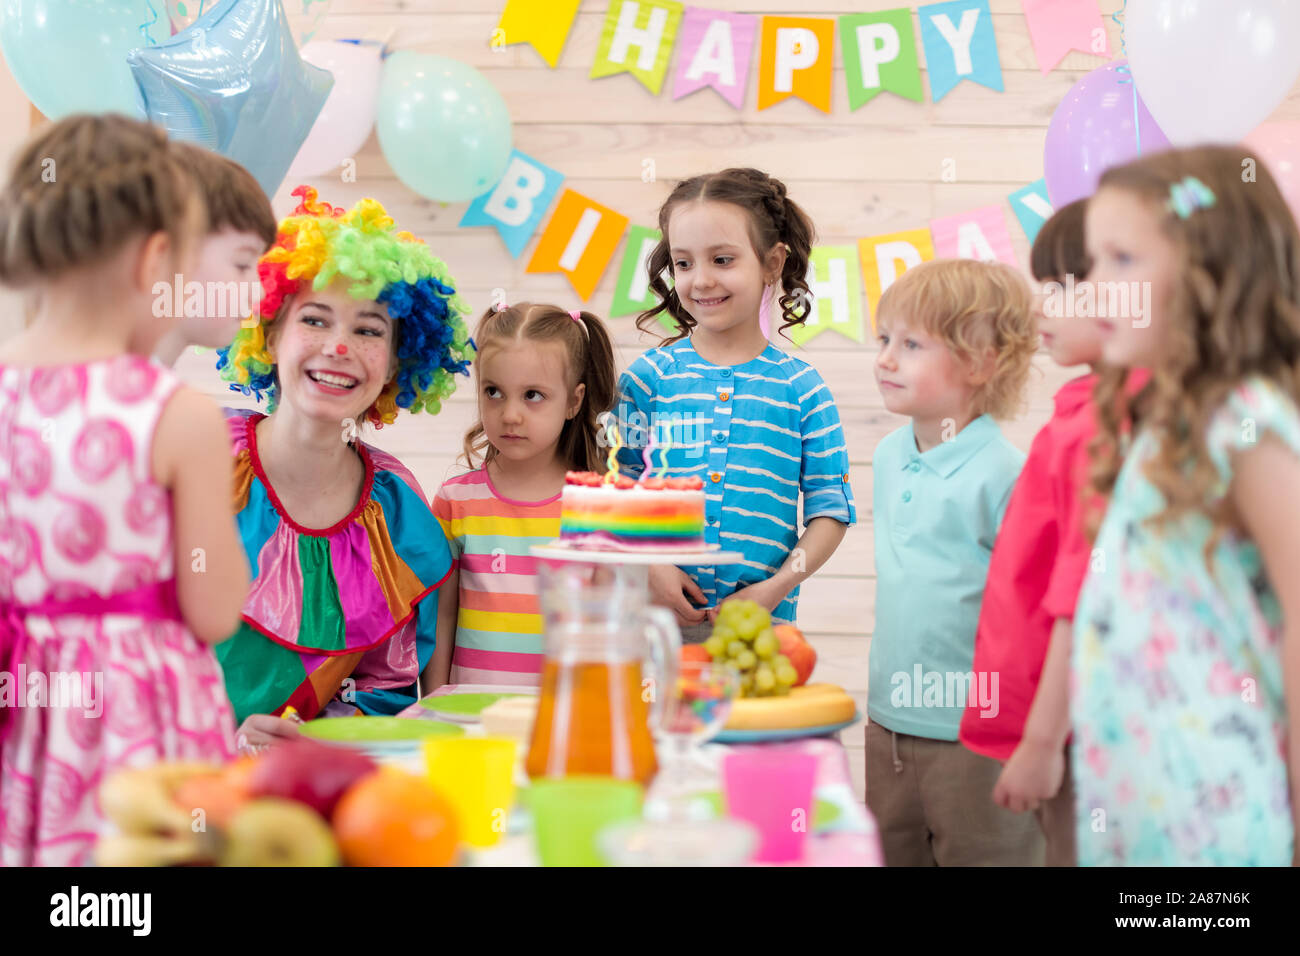 Los niños fiesta de cumpleaños. Los niños con clown reunidos alrededor de pastel de cumpleaños Foto de stock